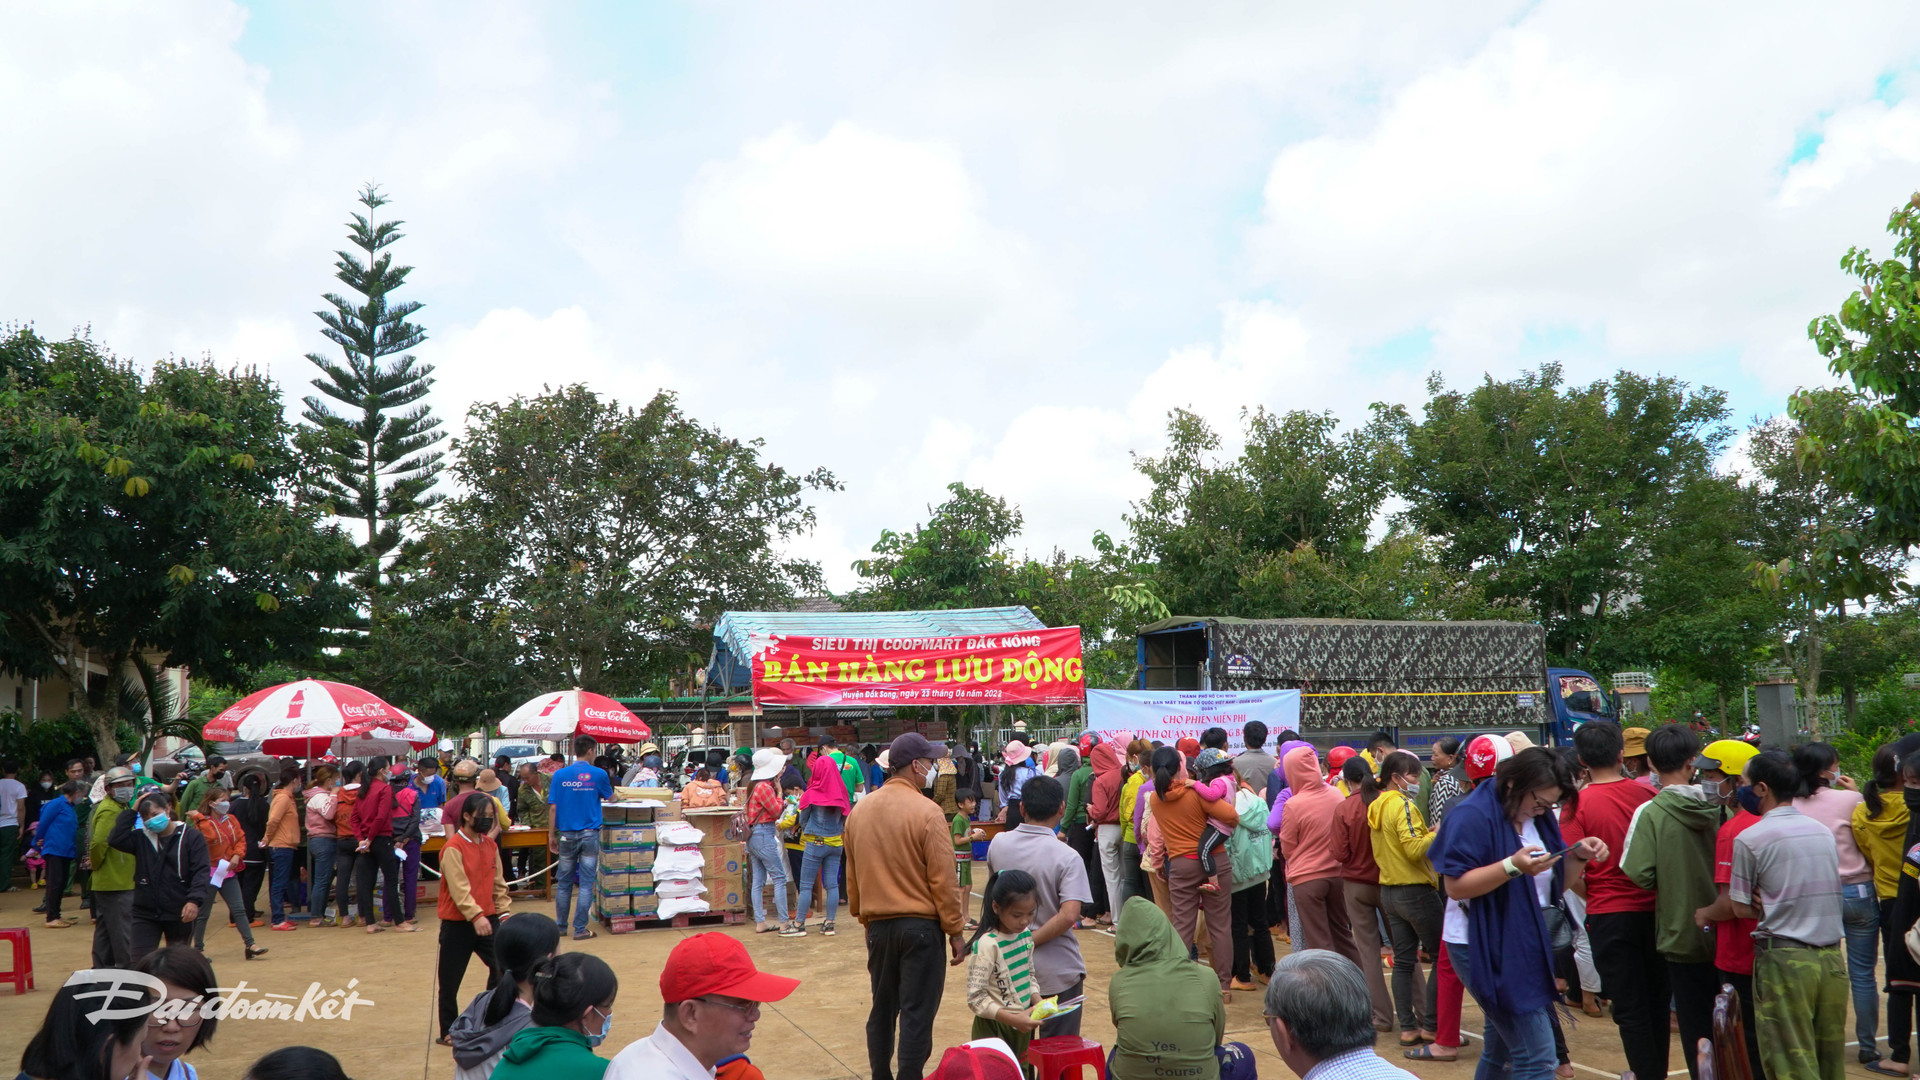 Toàn cảnh chương trình phiên chợ miễn phí dành cho người dân xã Thuận Hoà, huyện Đắk Song, tỉnh Đắk Nông.